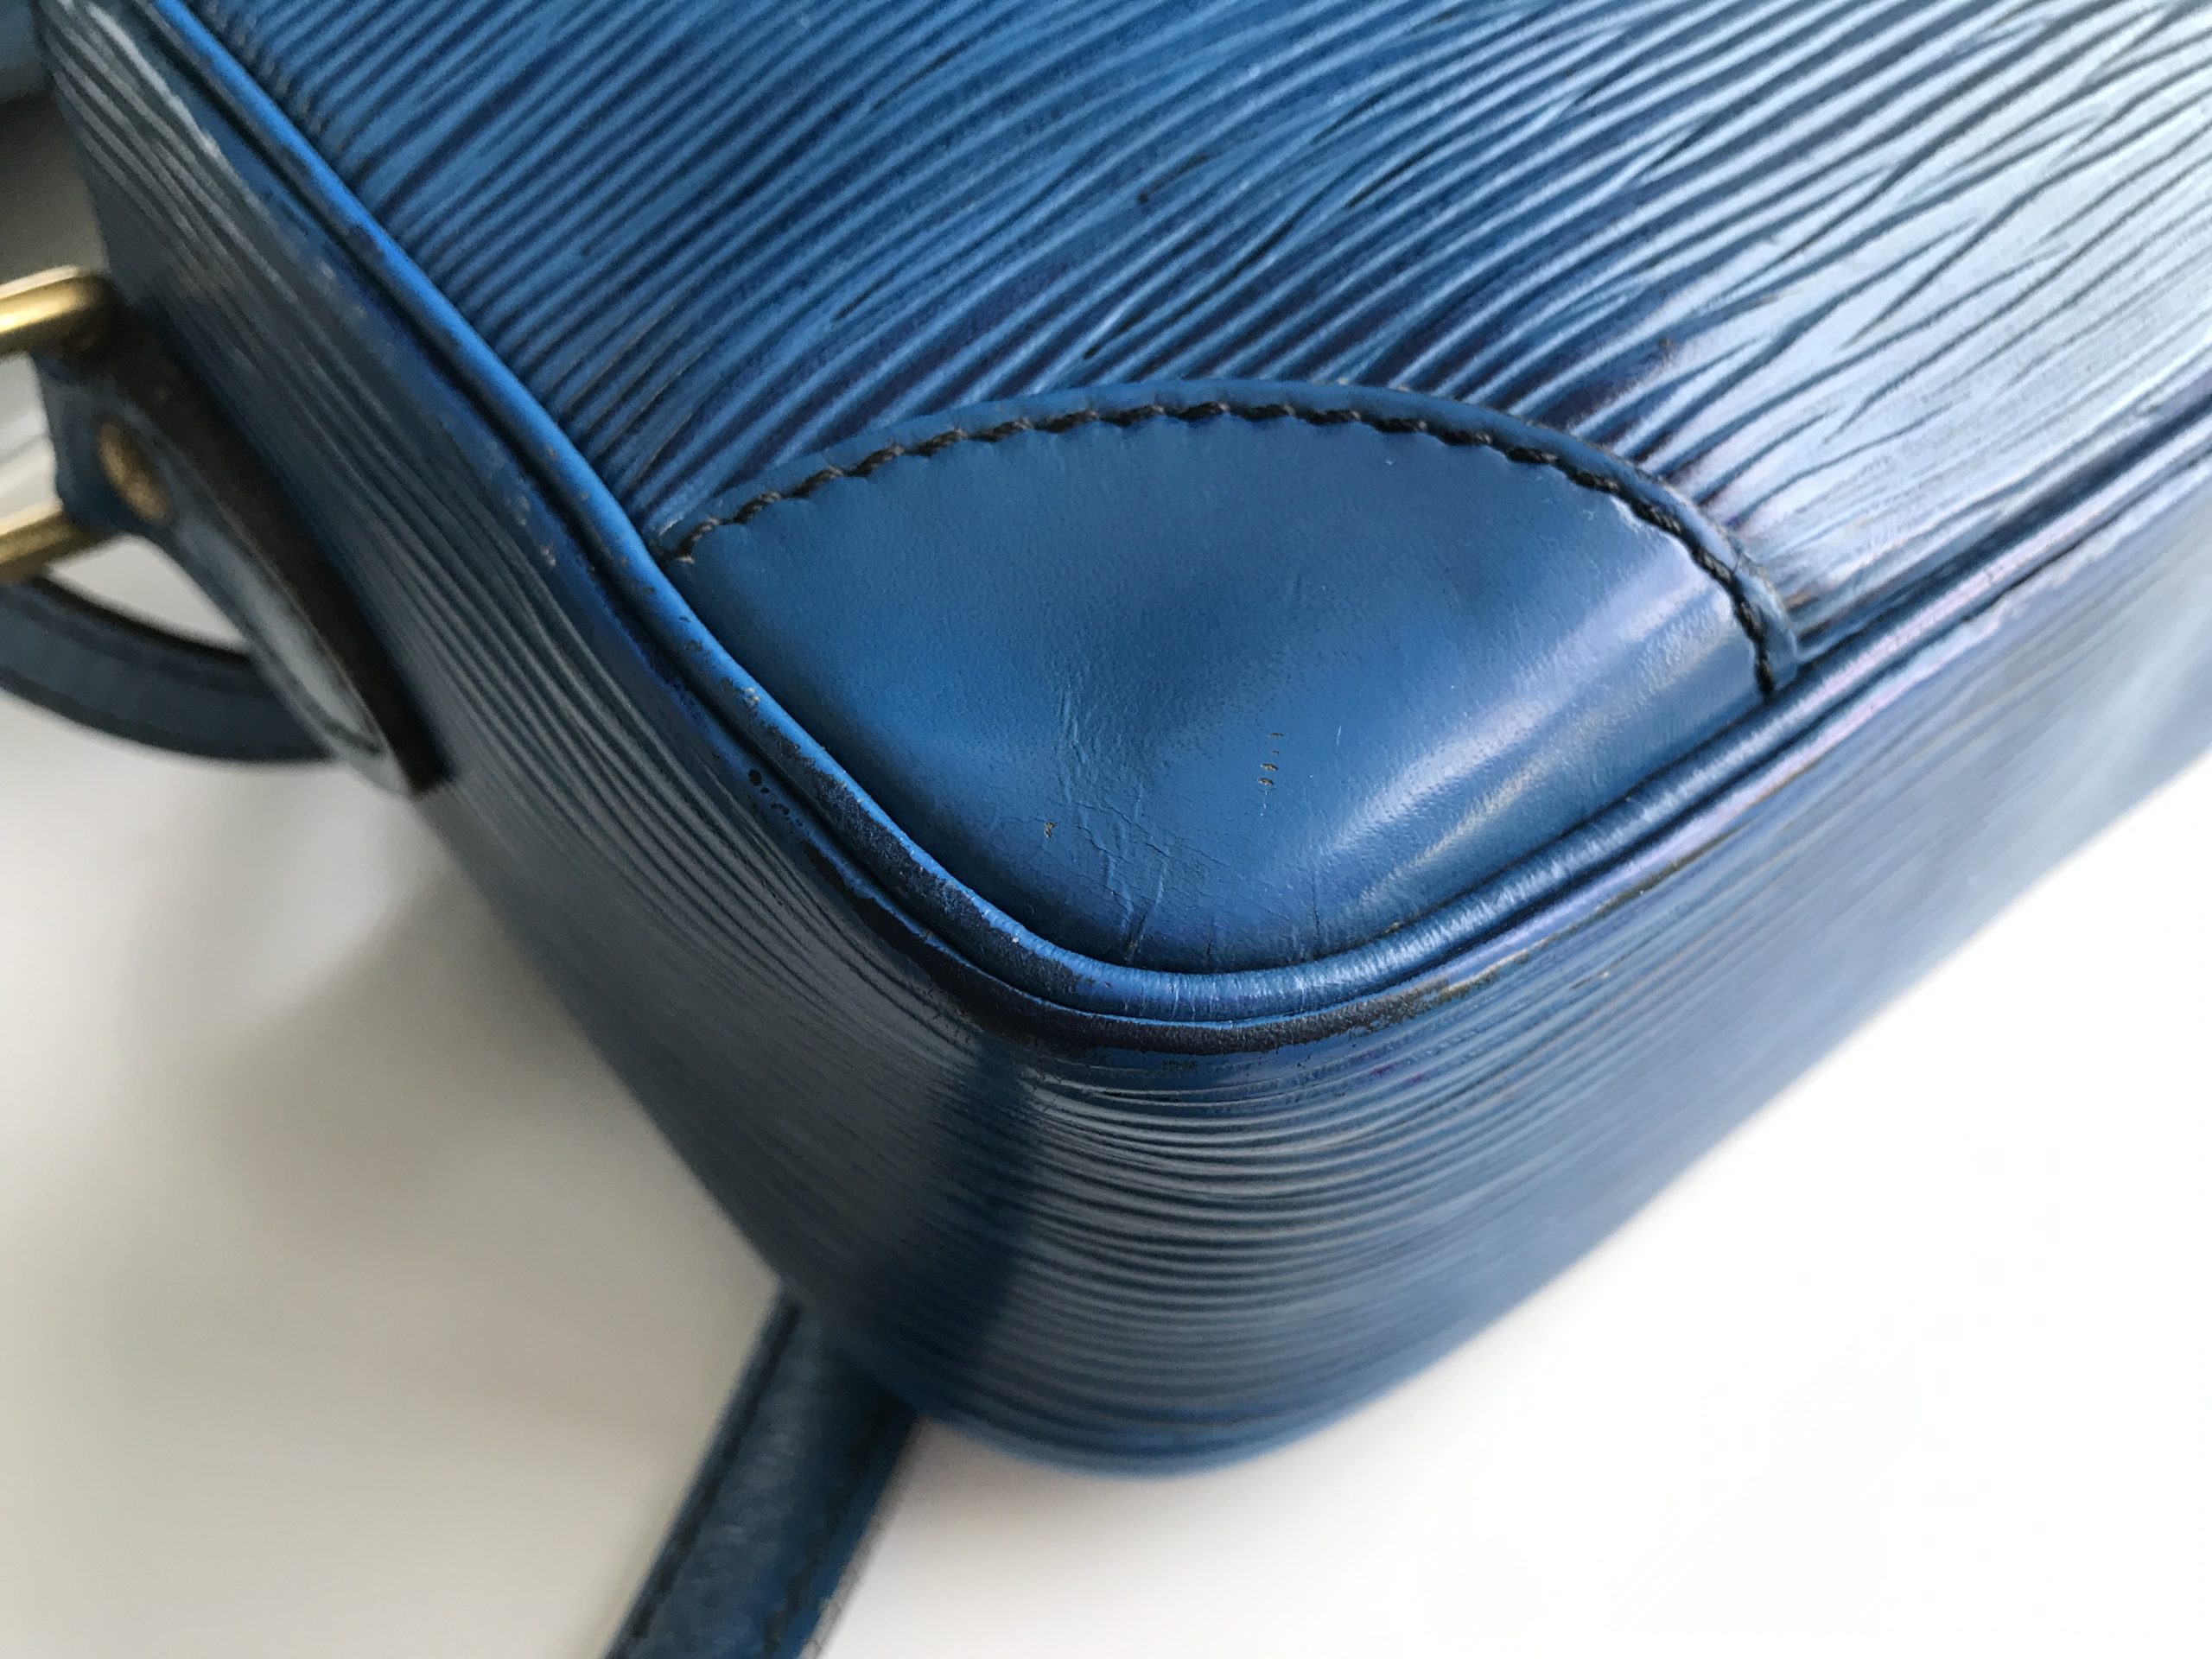 LOUIS VUITTON Shoulder Bag M52315 Trocadero vintage Epi Leather blue W –